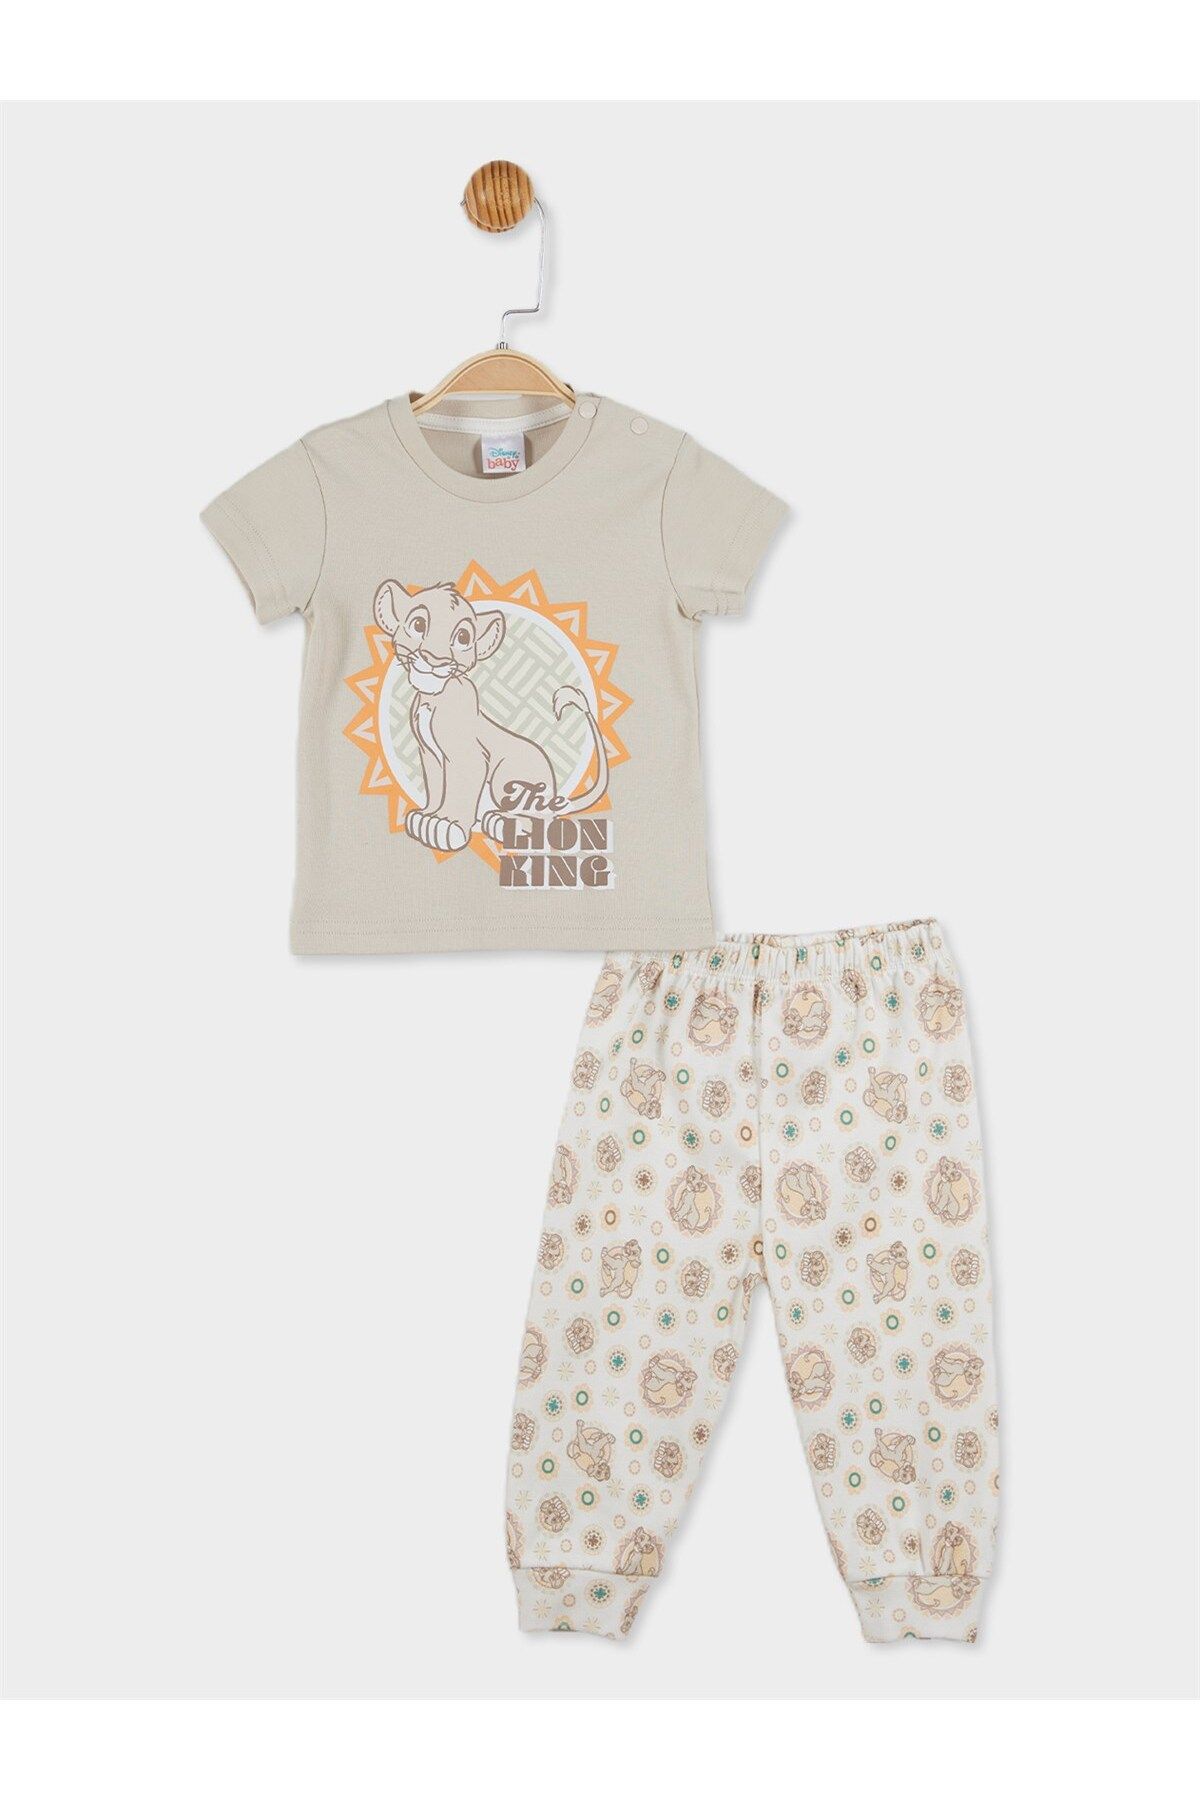 DİSNEY Aslan Kral Lisanslı Erkek Bebek Pijama Takımı 20817